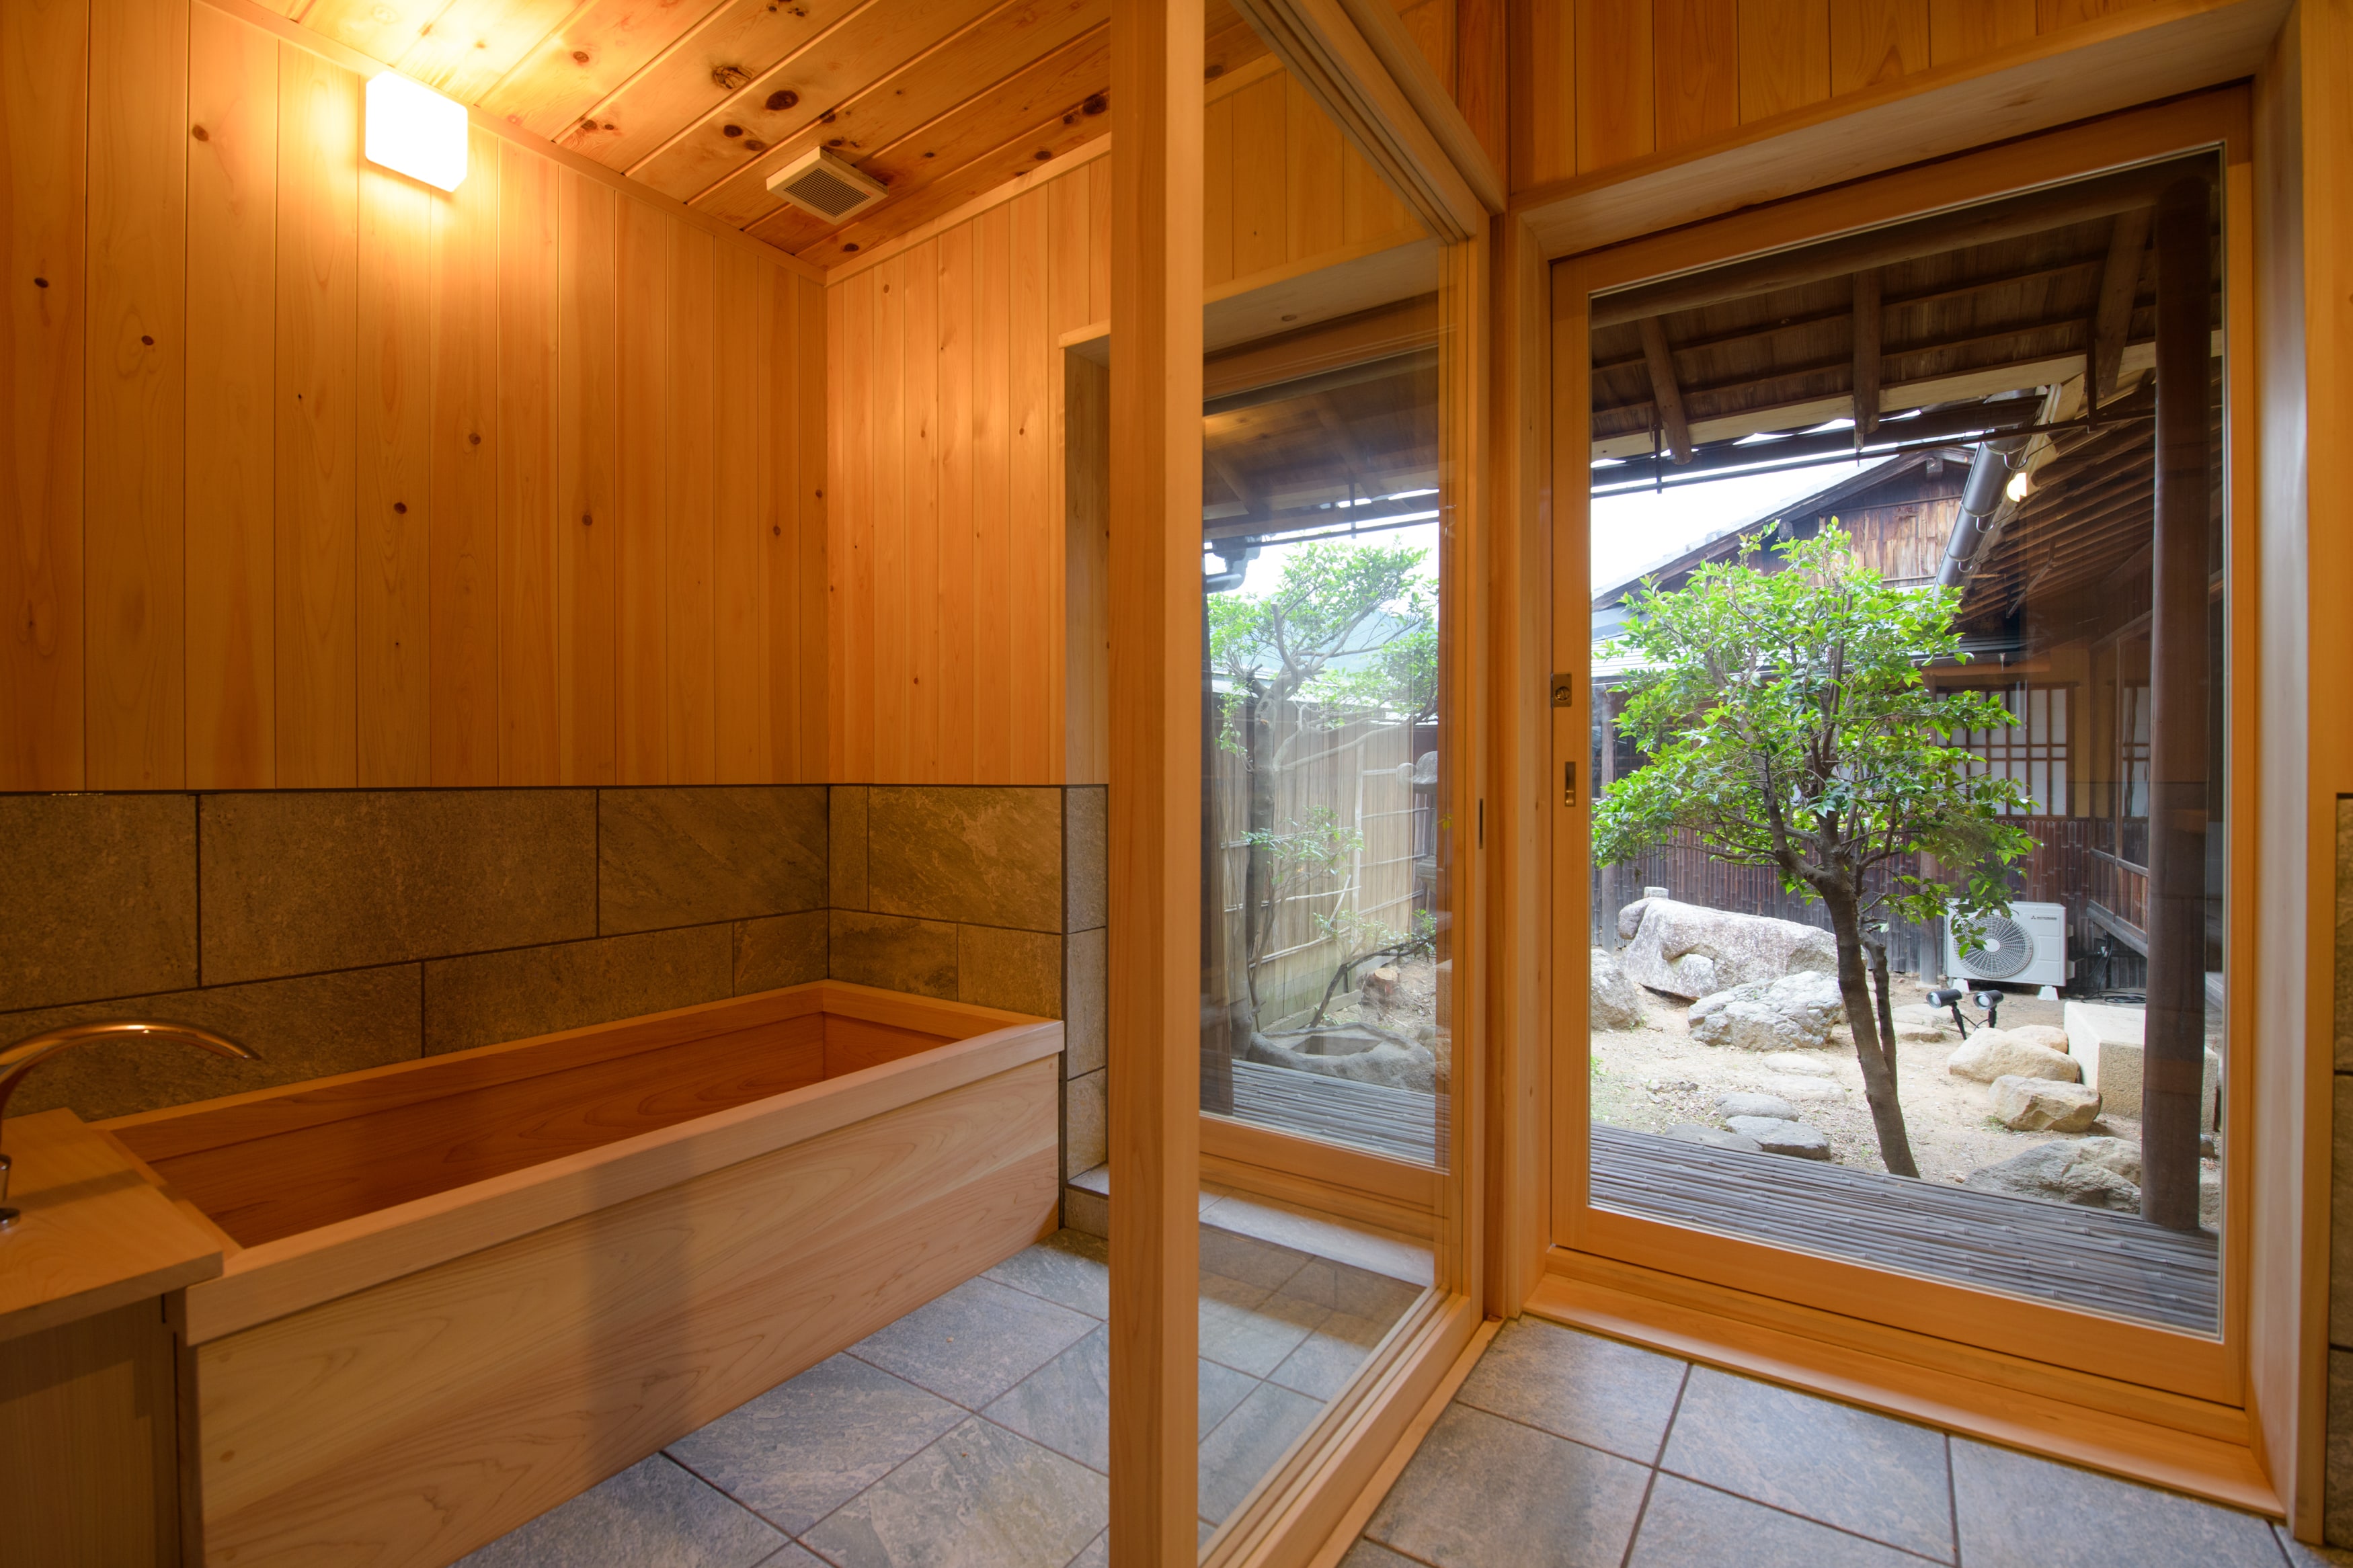 Main house Zantsuki bath and garden